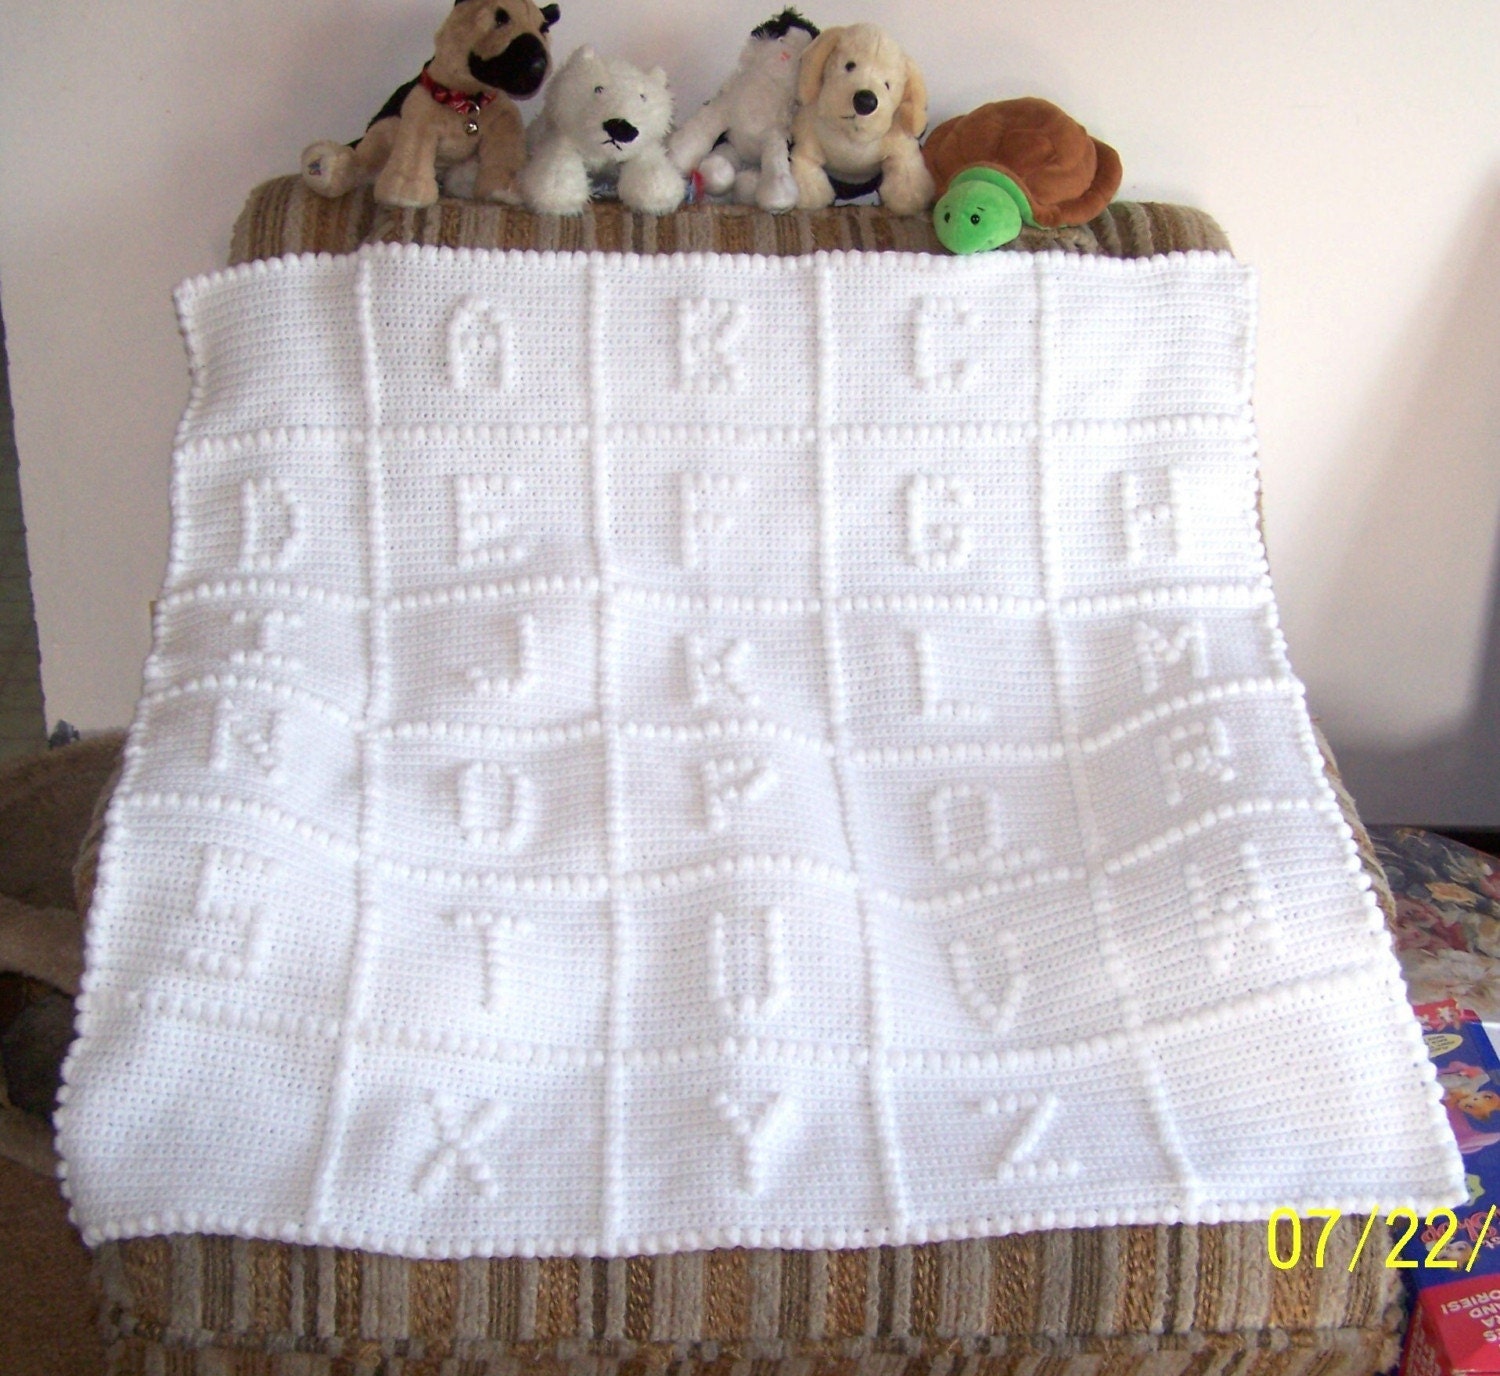 Teddy Bear Pattern - Crochet -- All About Crocheting -- Free